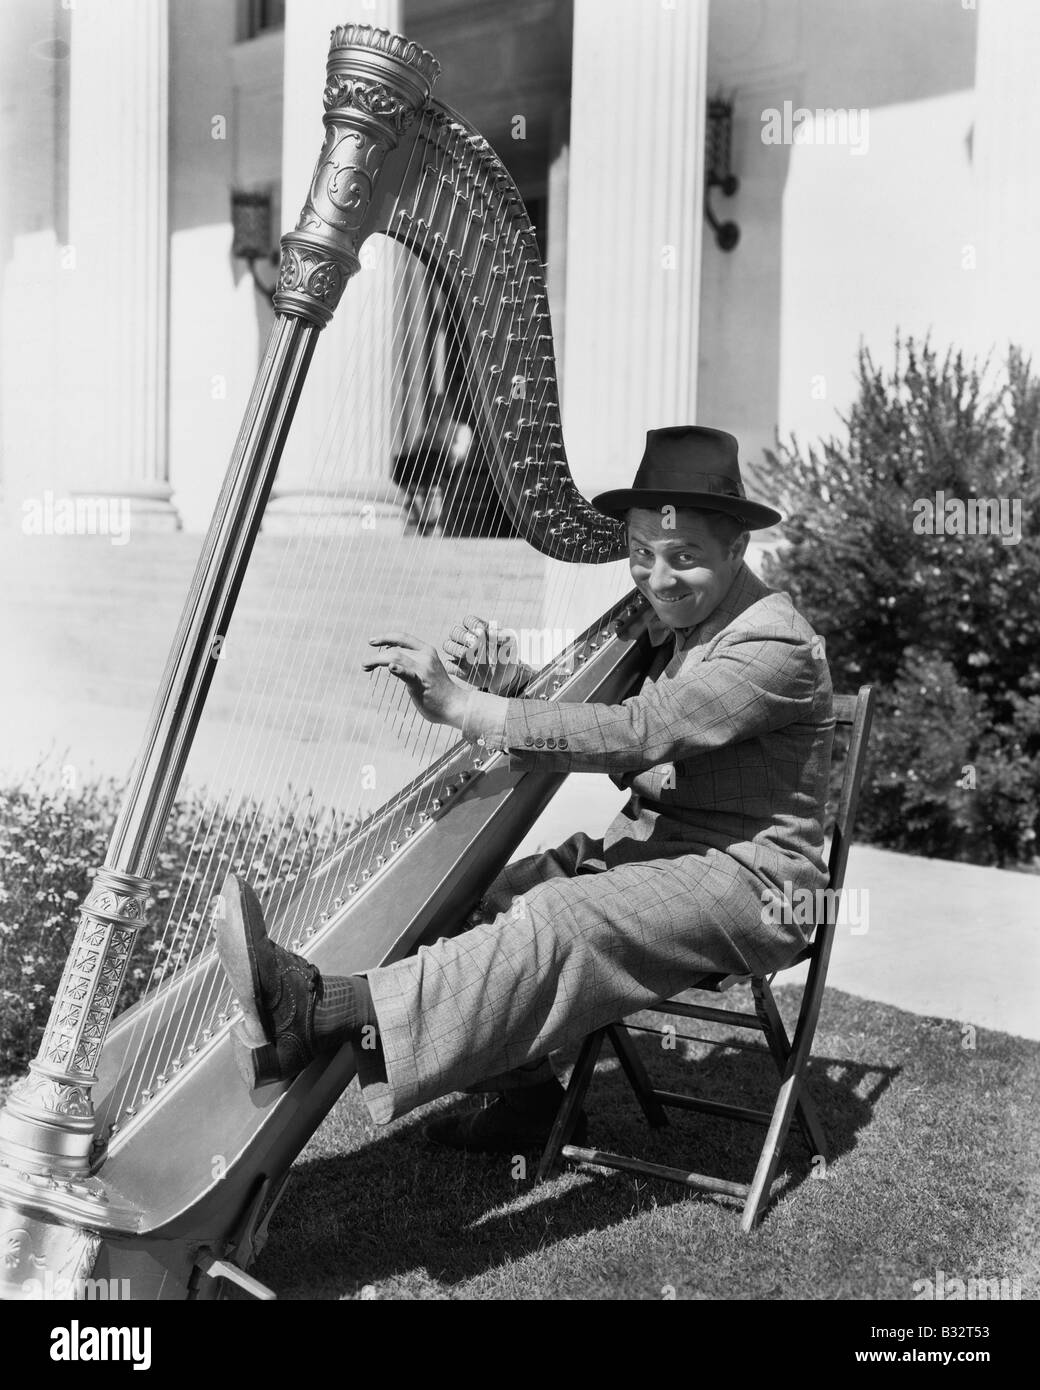 Profil d'un homme jouant de la harpe et souriant Banque D'Images